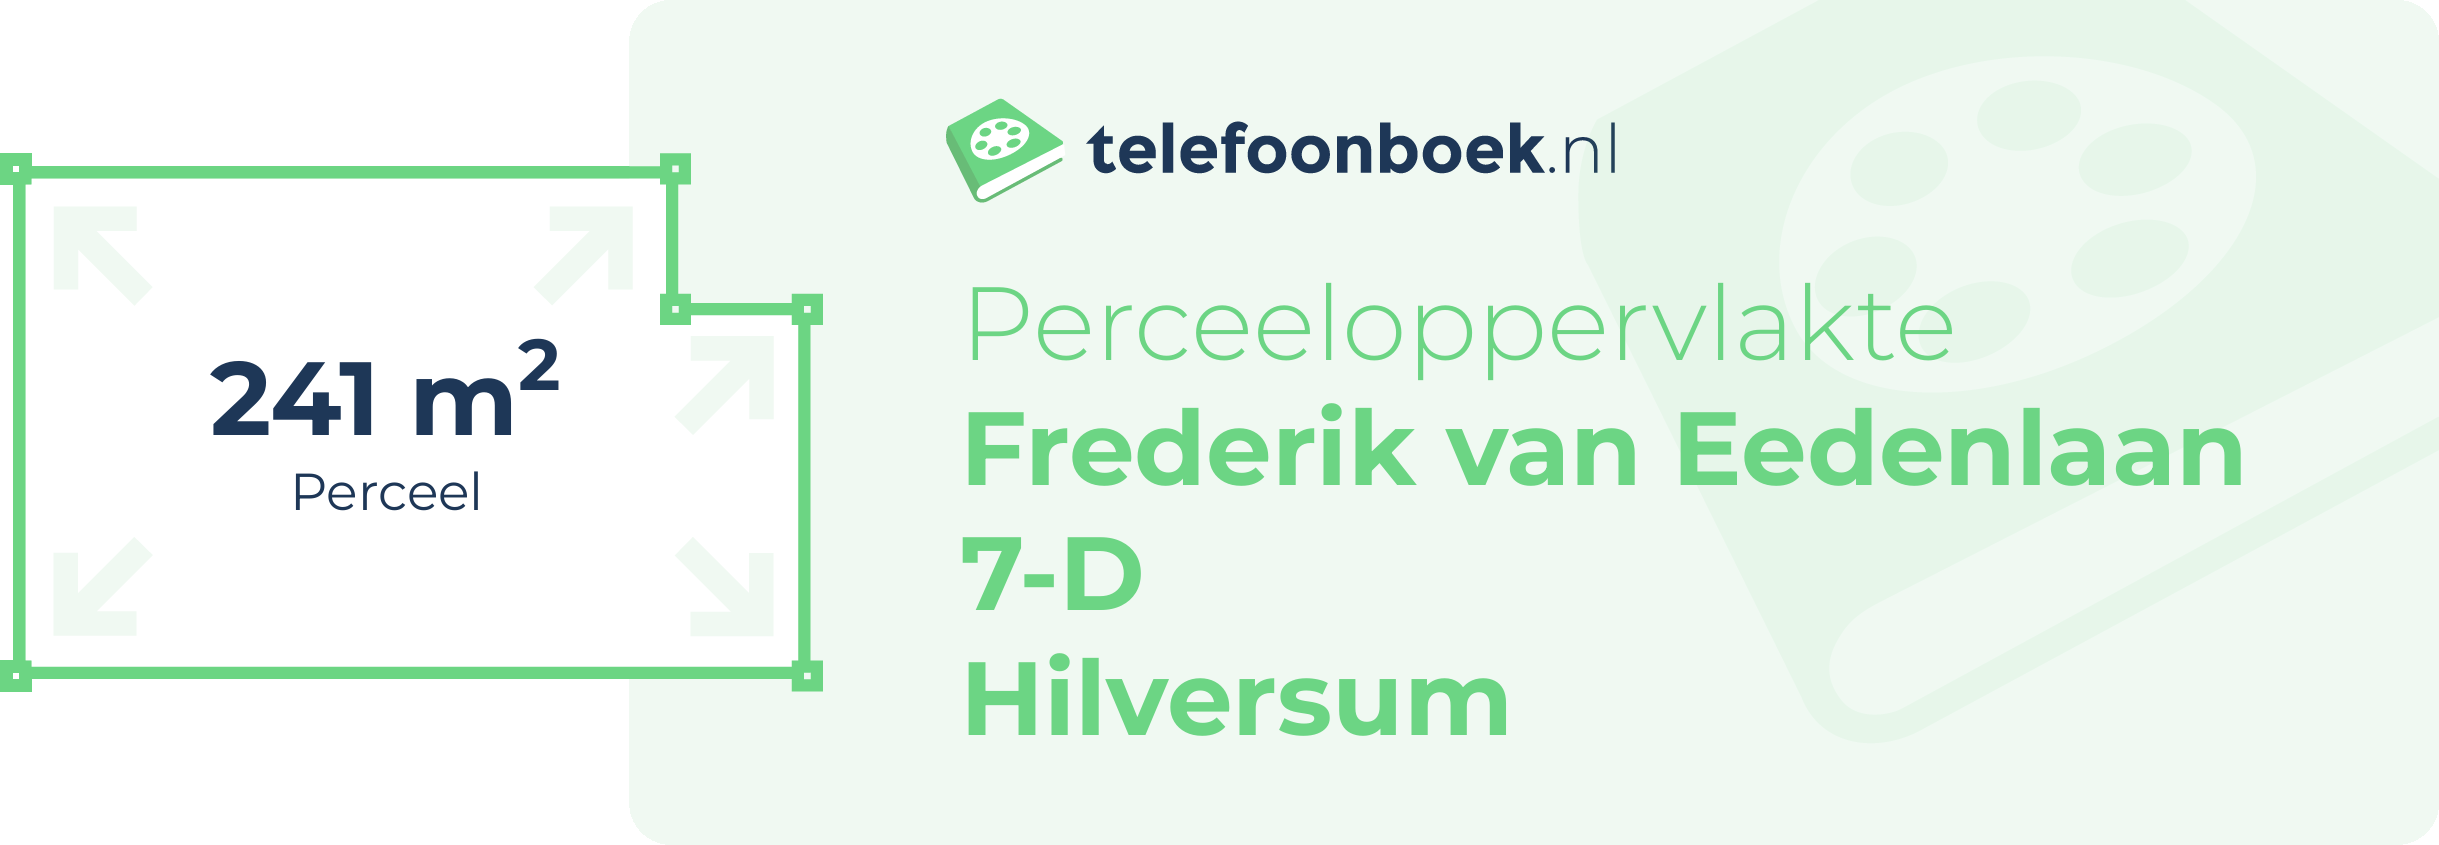 Perceeloppervlakte Frederik Van Eedenlaan 7-D Hilversum